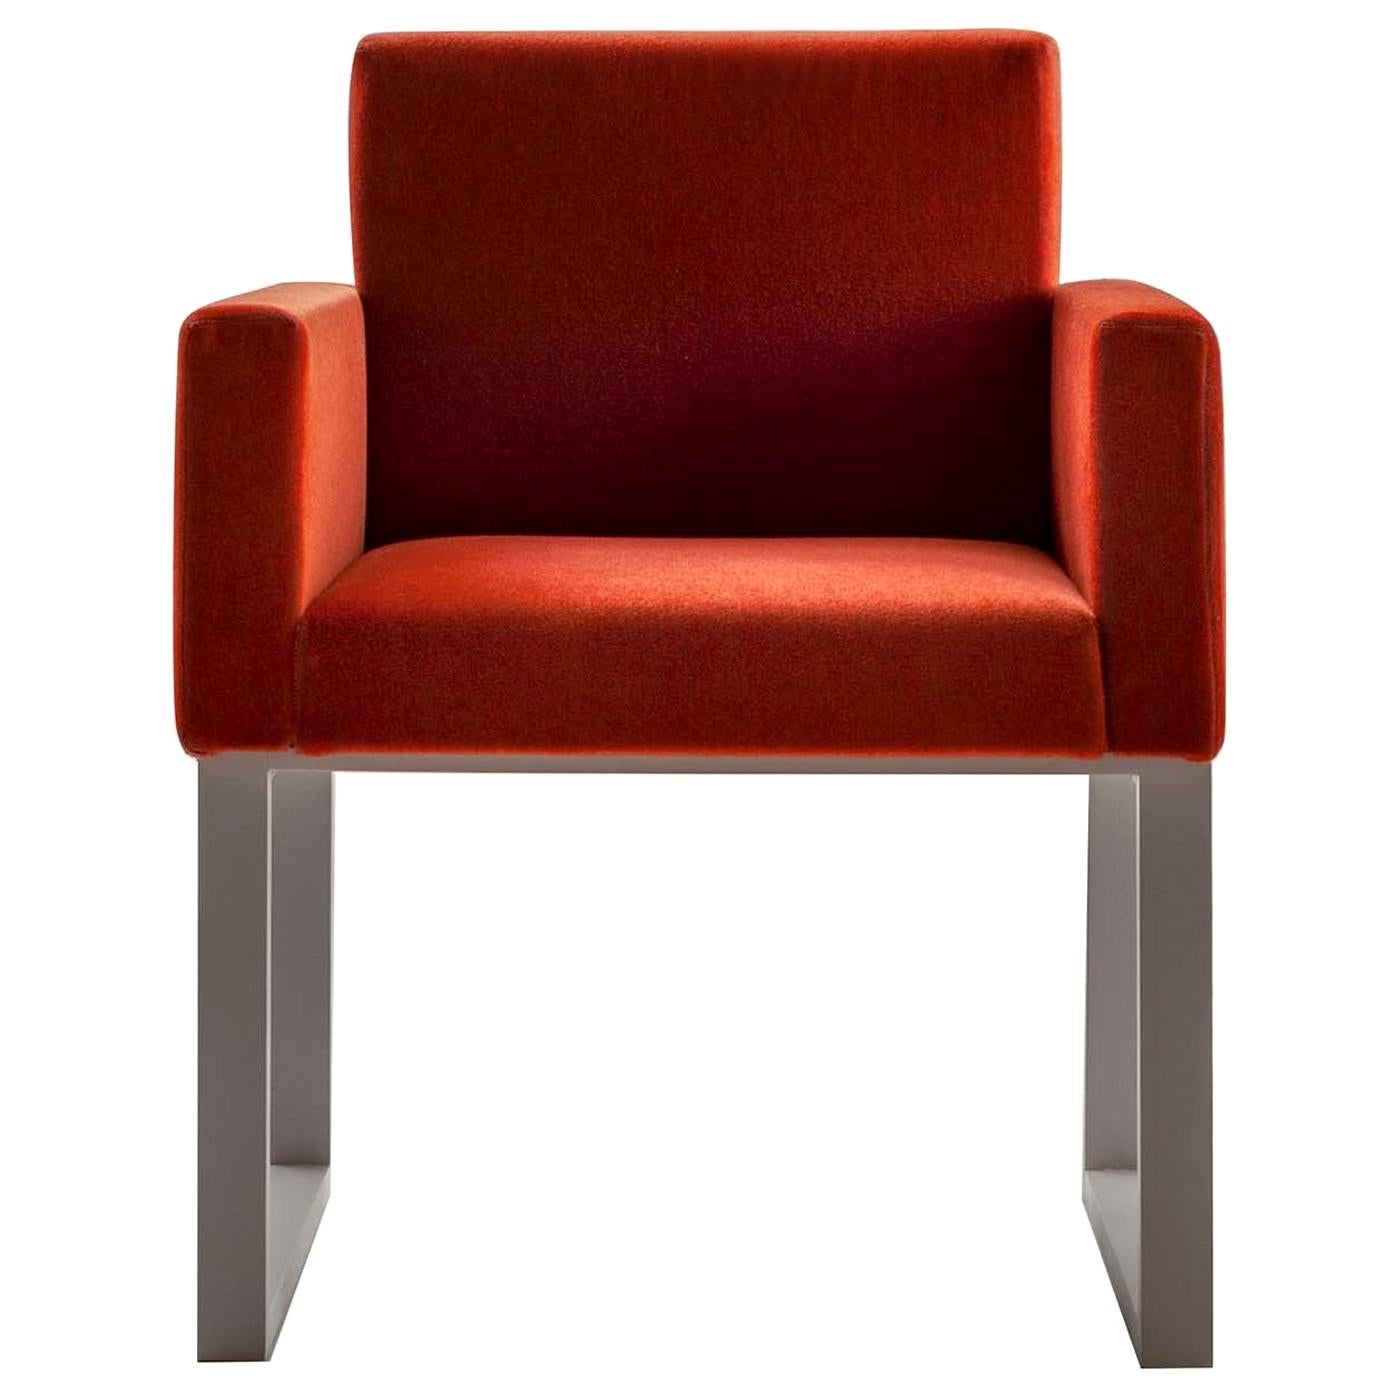 Maxima-Stuhl von Bartoli Design